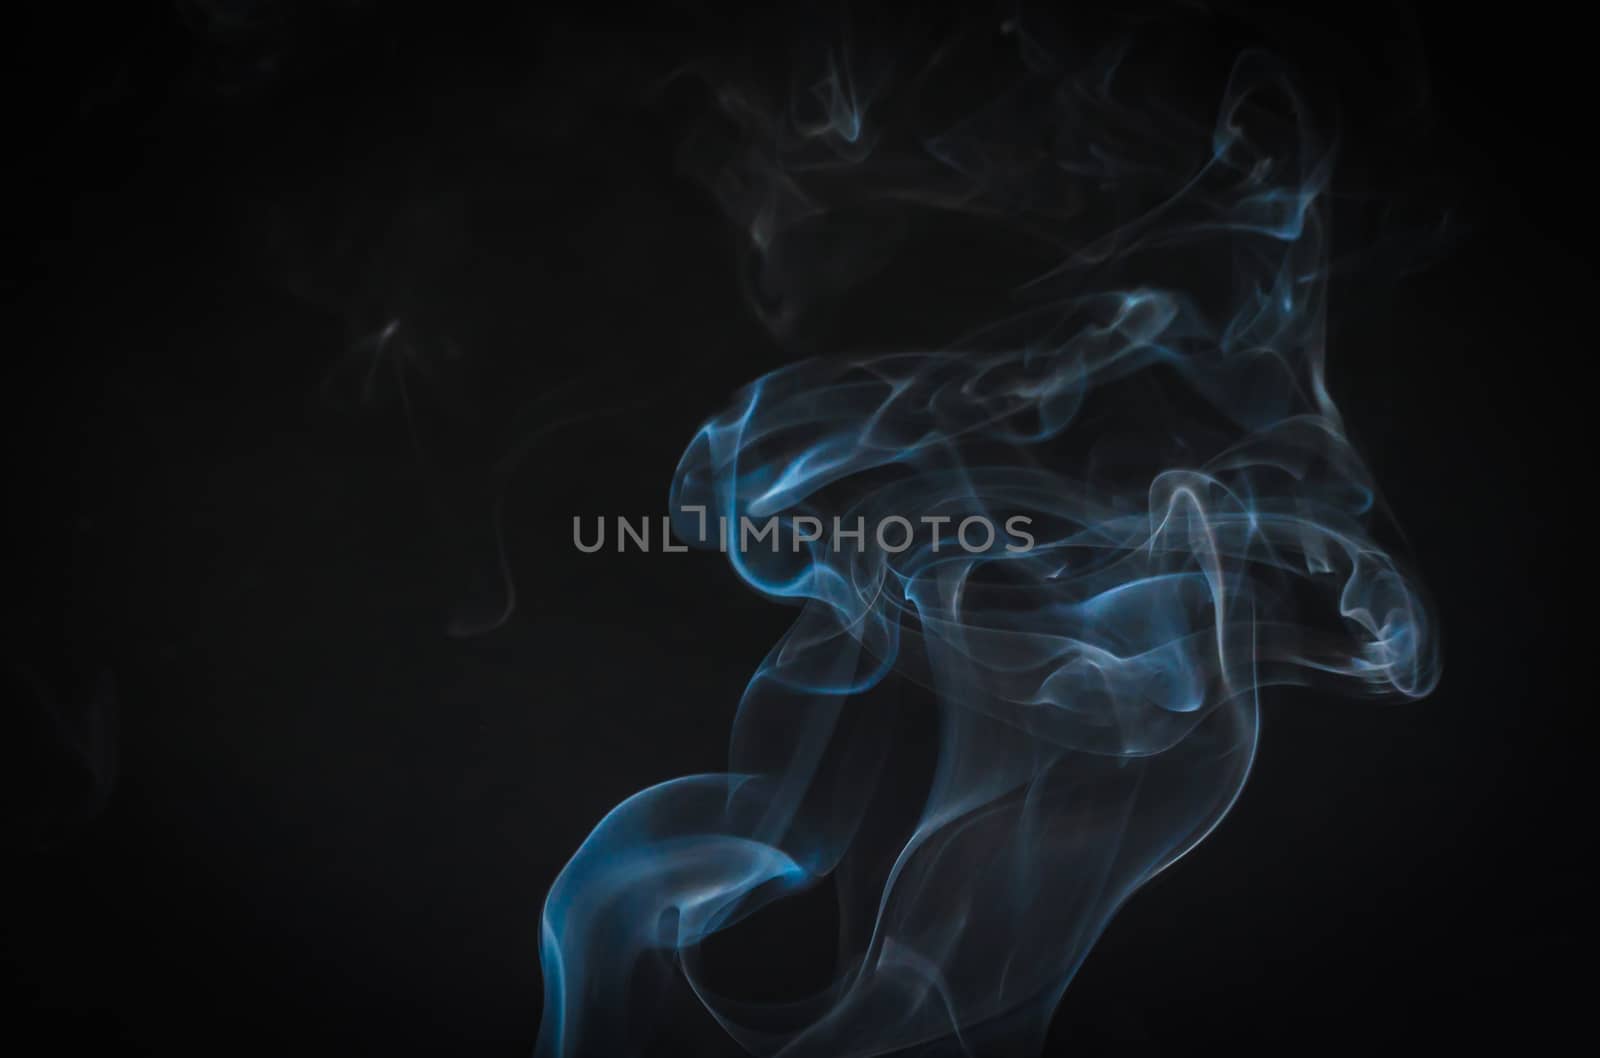 Beautiful of smoke movement as art by dul_ny